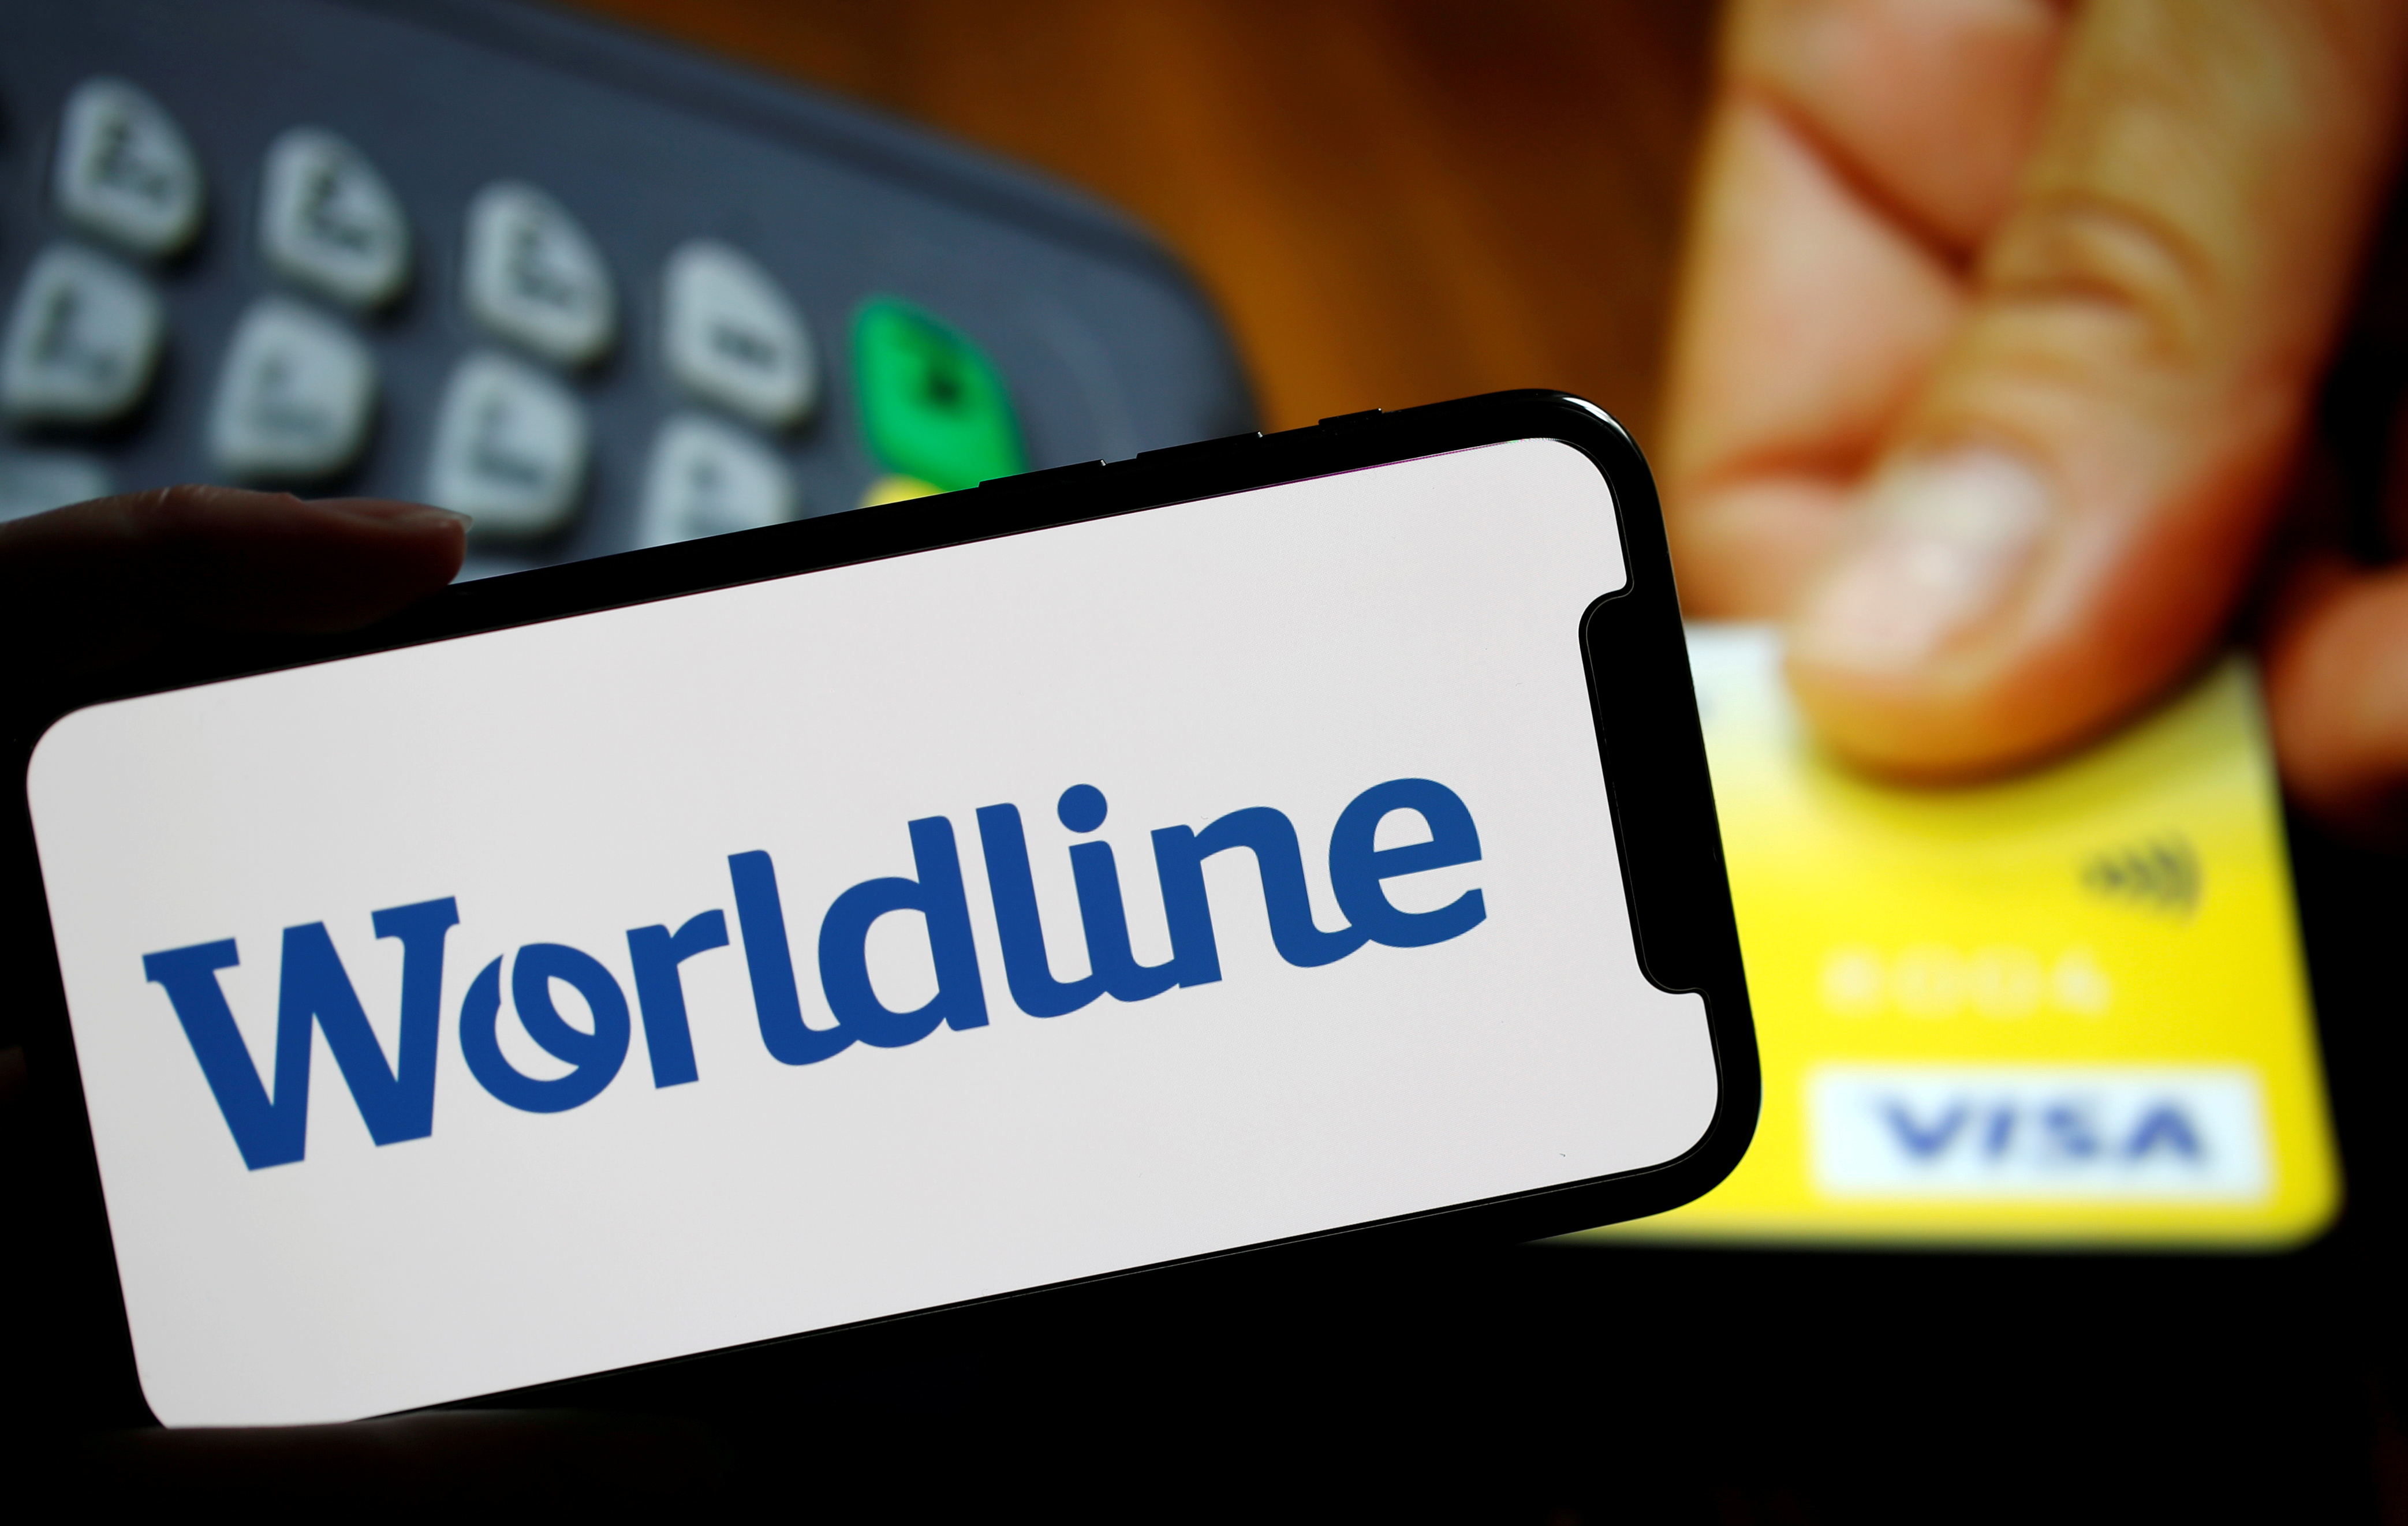 Paiements : Worldline lance un avertissement et chute en Bourse